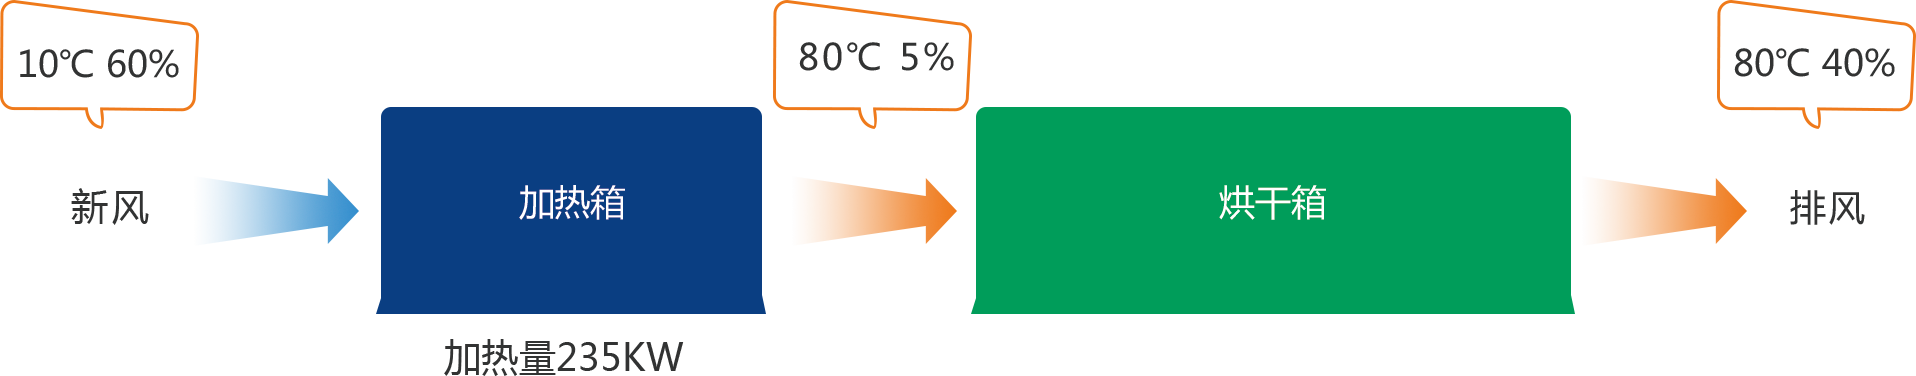 工业热排放回收再利用系统(图2)